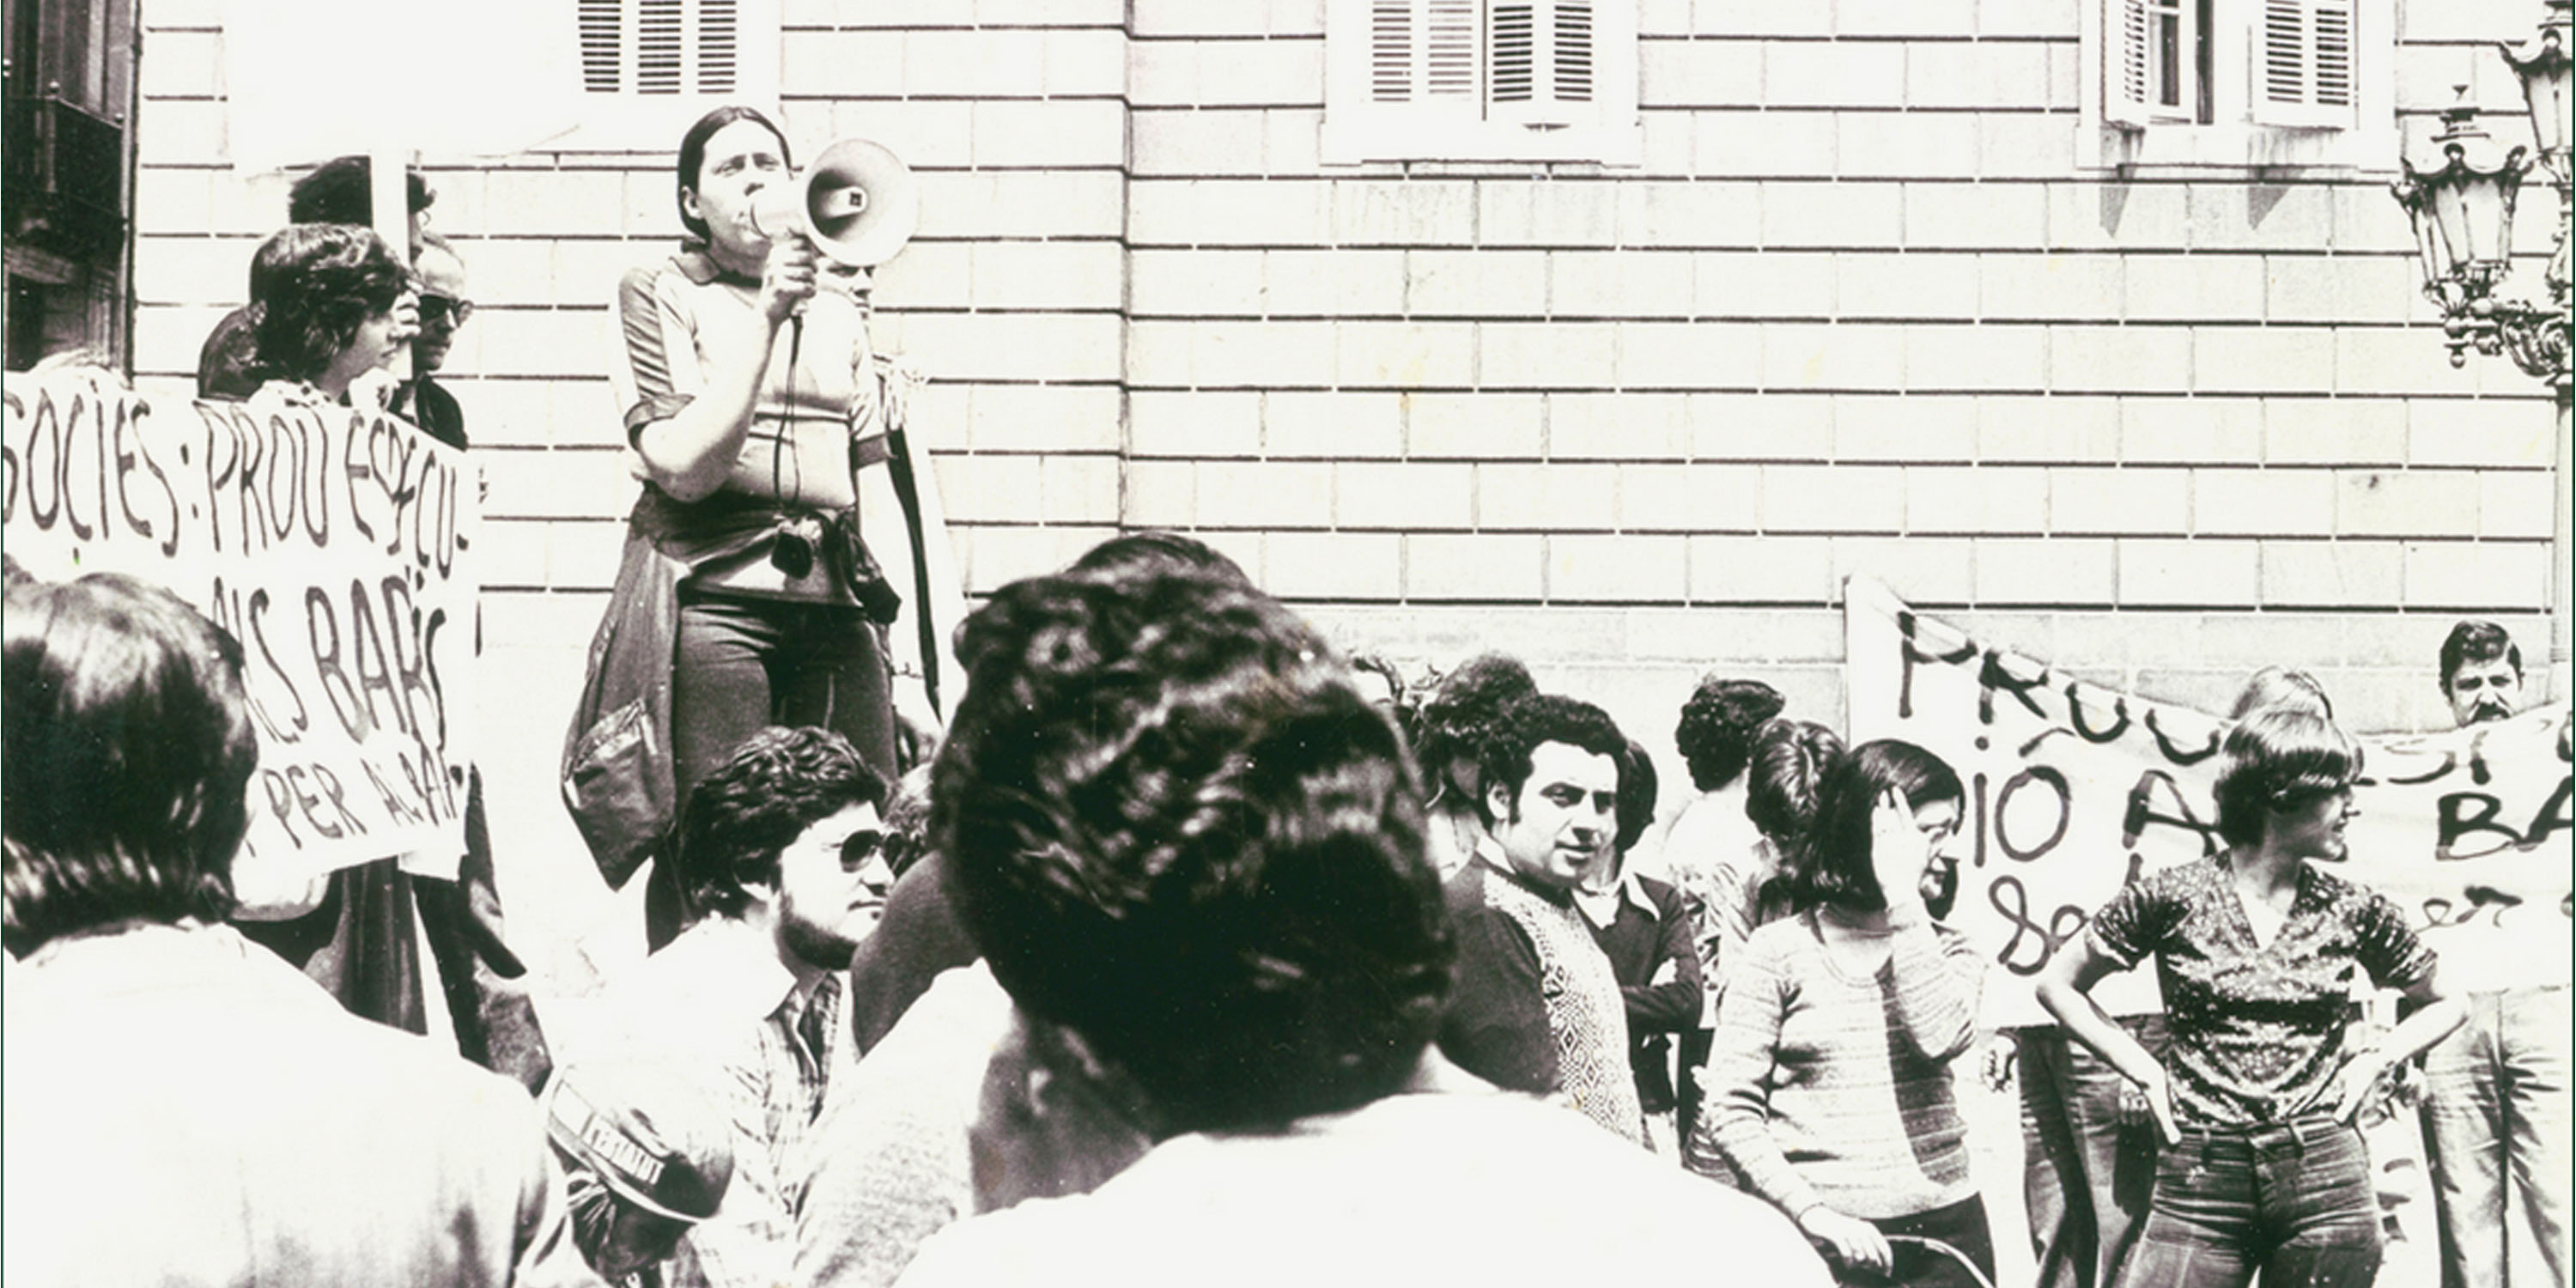 La reivindicació veïnal de La Sedeta va arribar a la plaça de Sant Jaume, davant de l’Ajuntament de Barcelona, durant els mandats de Joaquim Viola i Josep Maria Socias, qui va aprovar la compra del solar. Any 1976